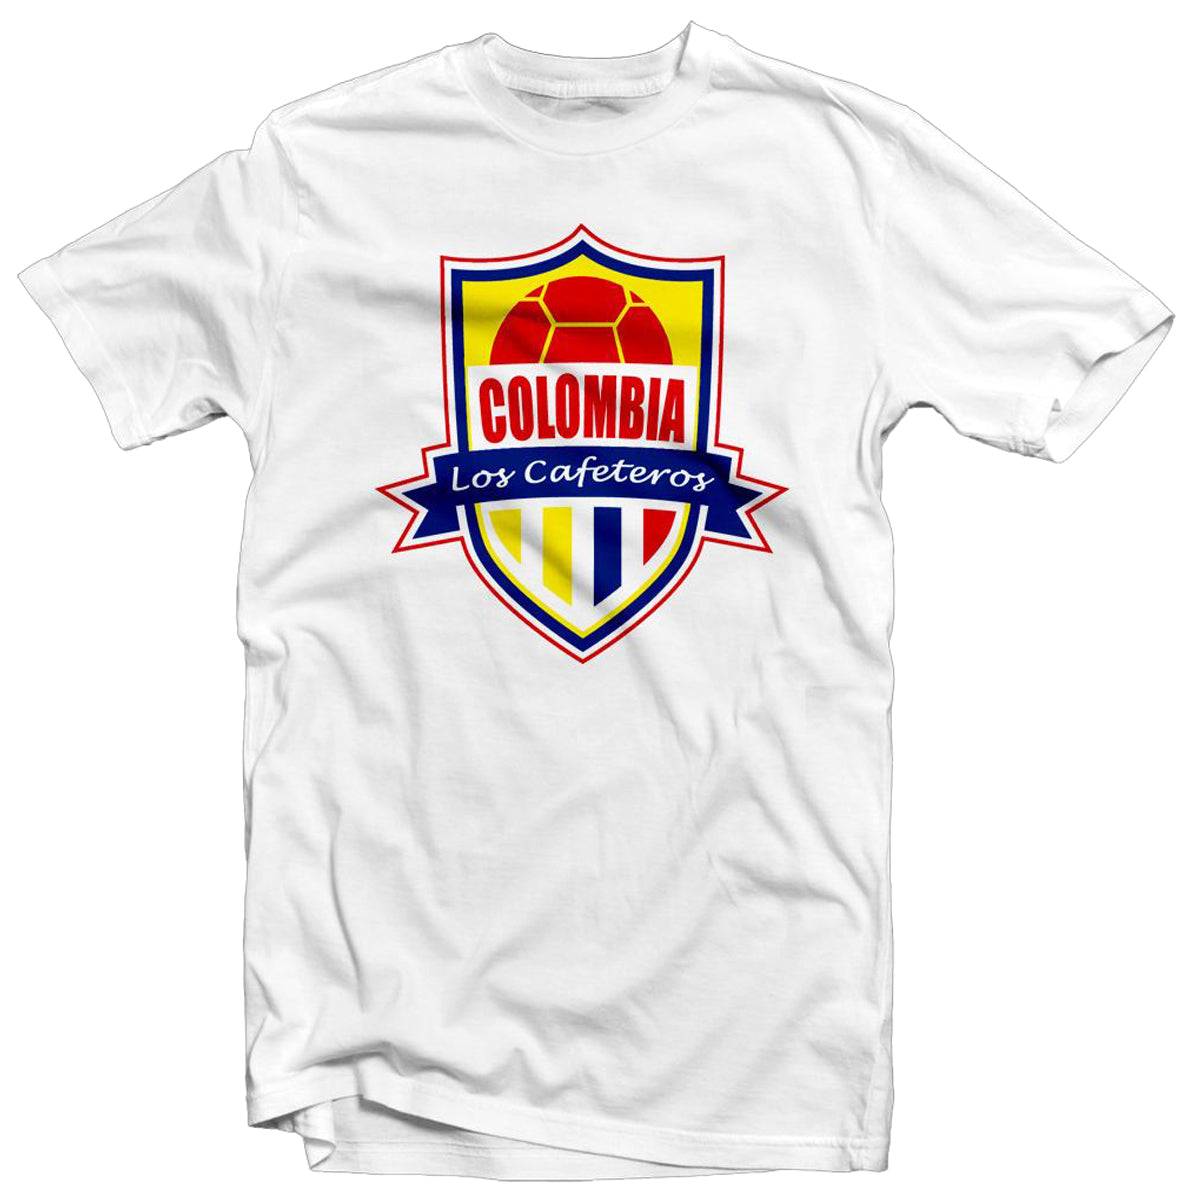 Colombia Los Cafeteros Legend Tee: Escobar T-Shirt 411 